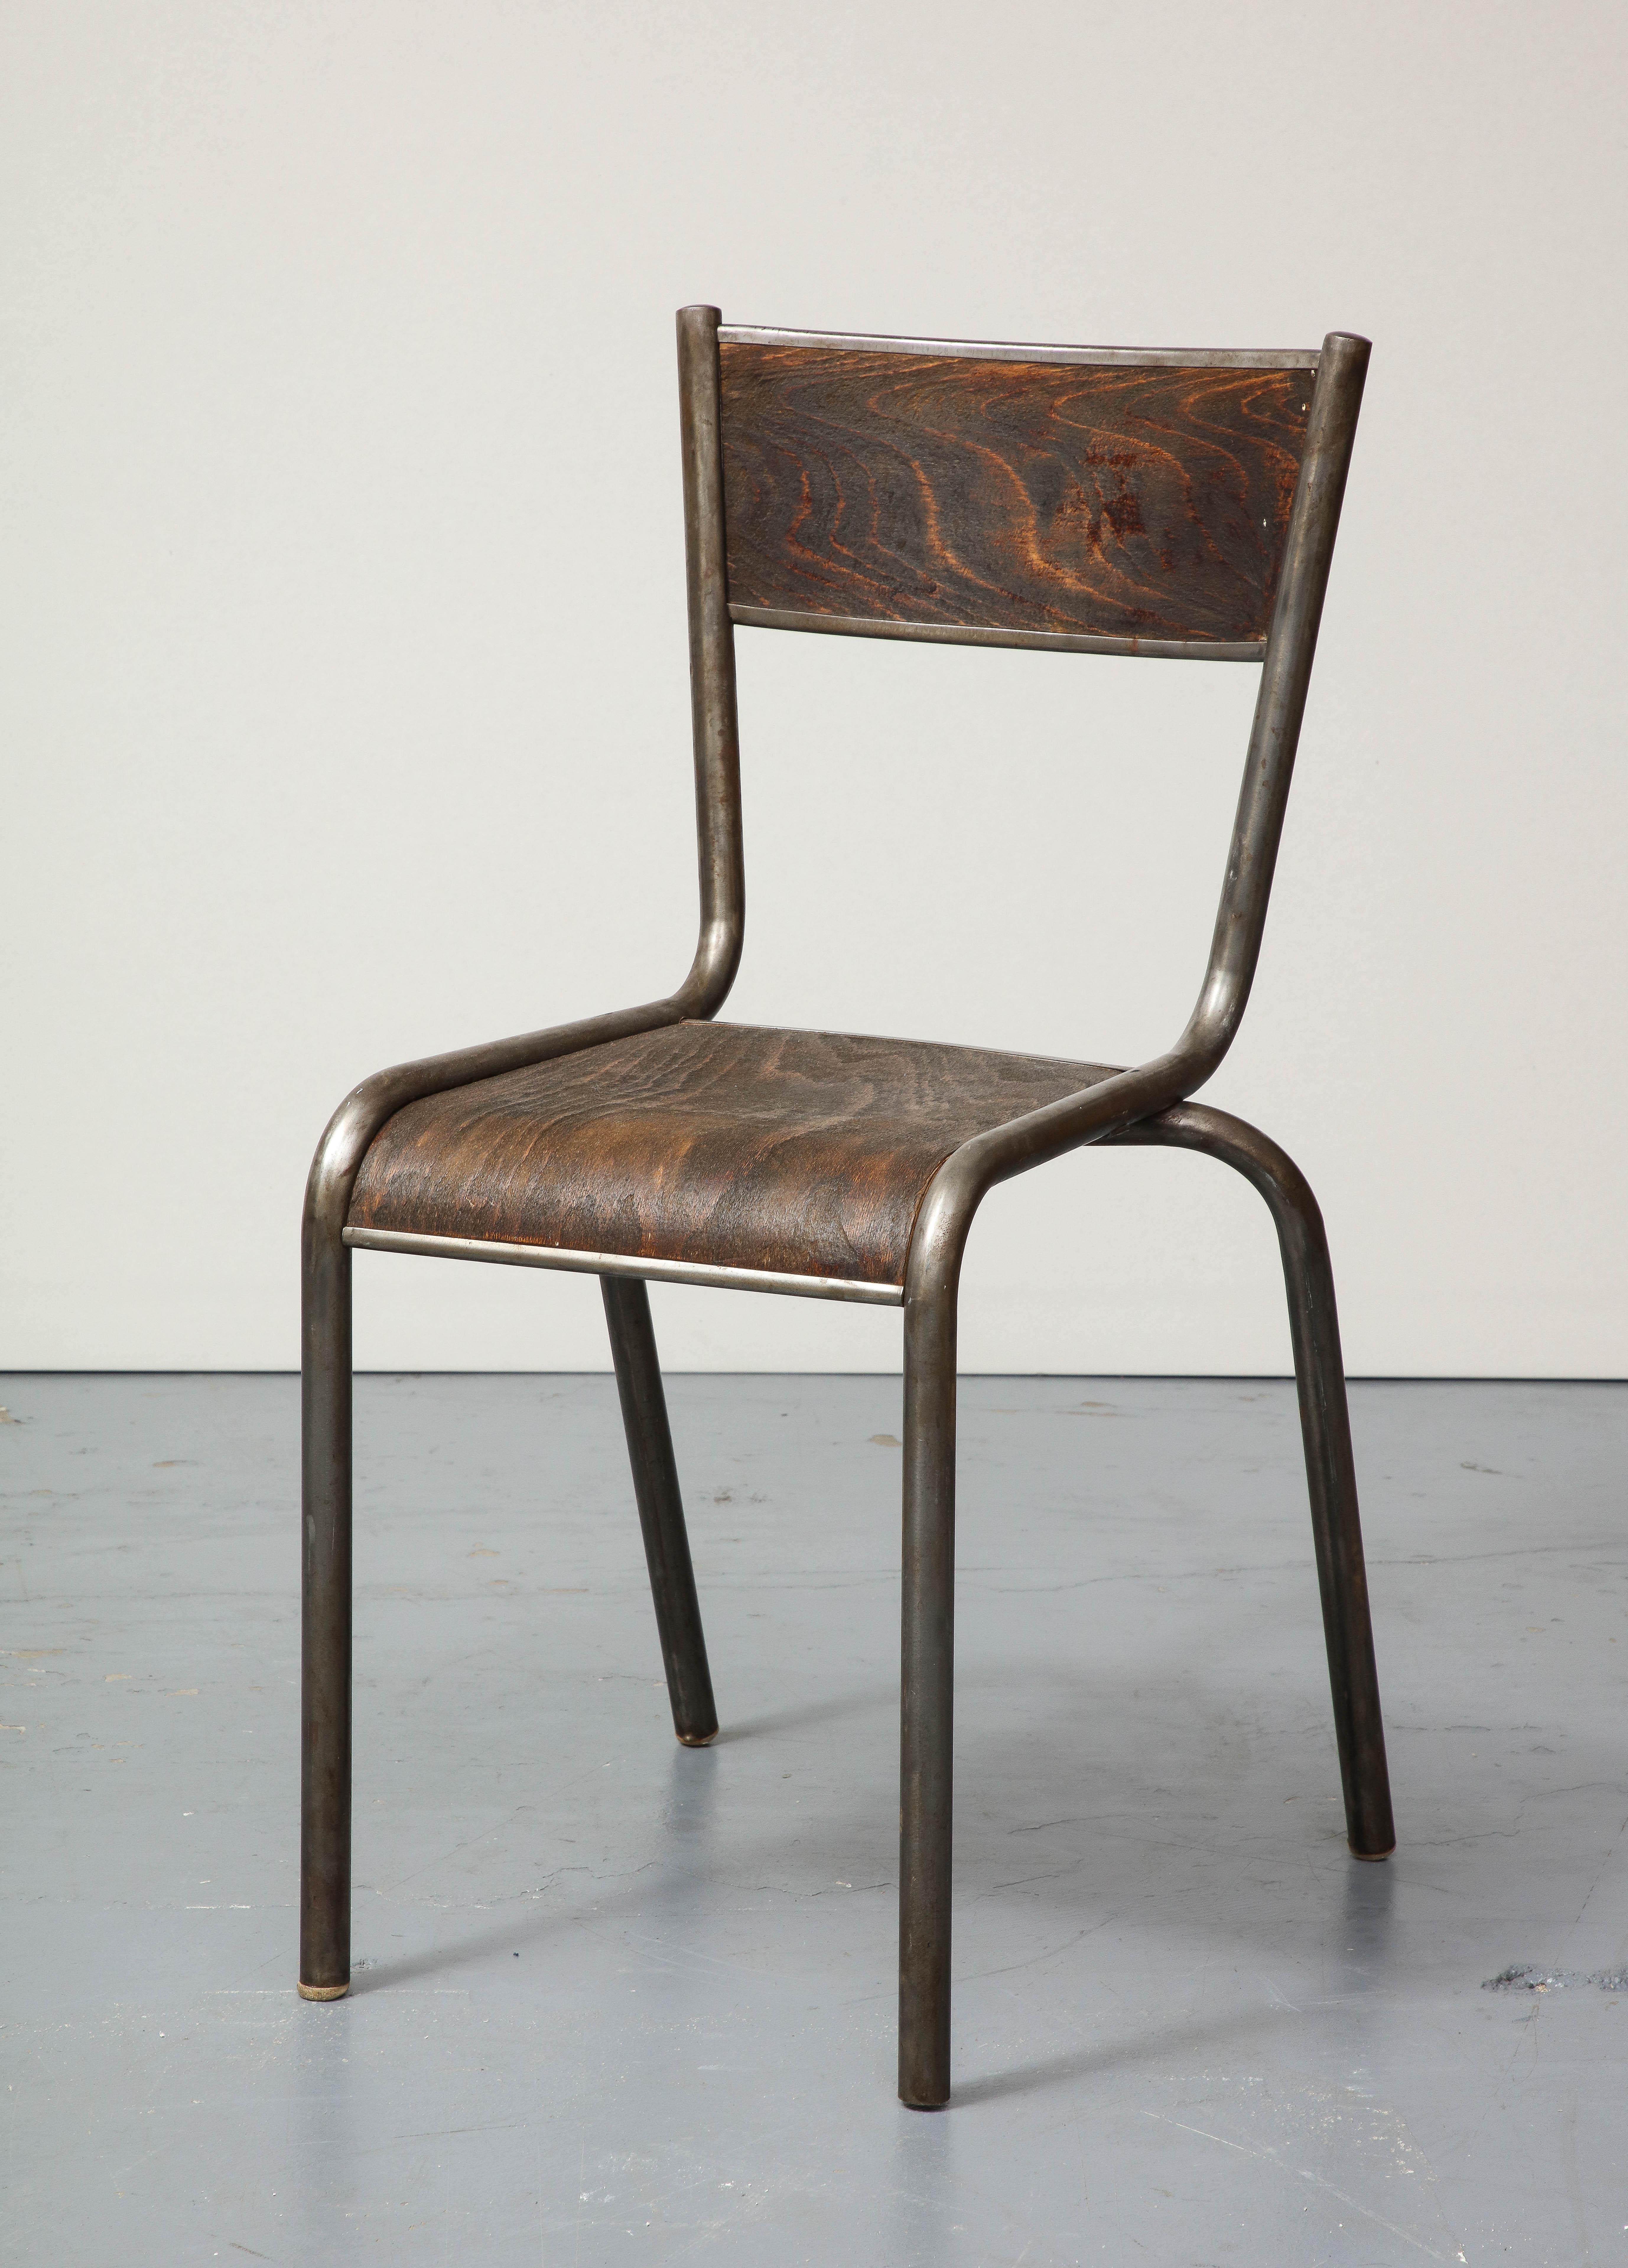 Rustikaler, schön patinierter Stuhl aus Stahlrohr und gebogenem Holz.